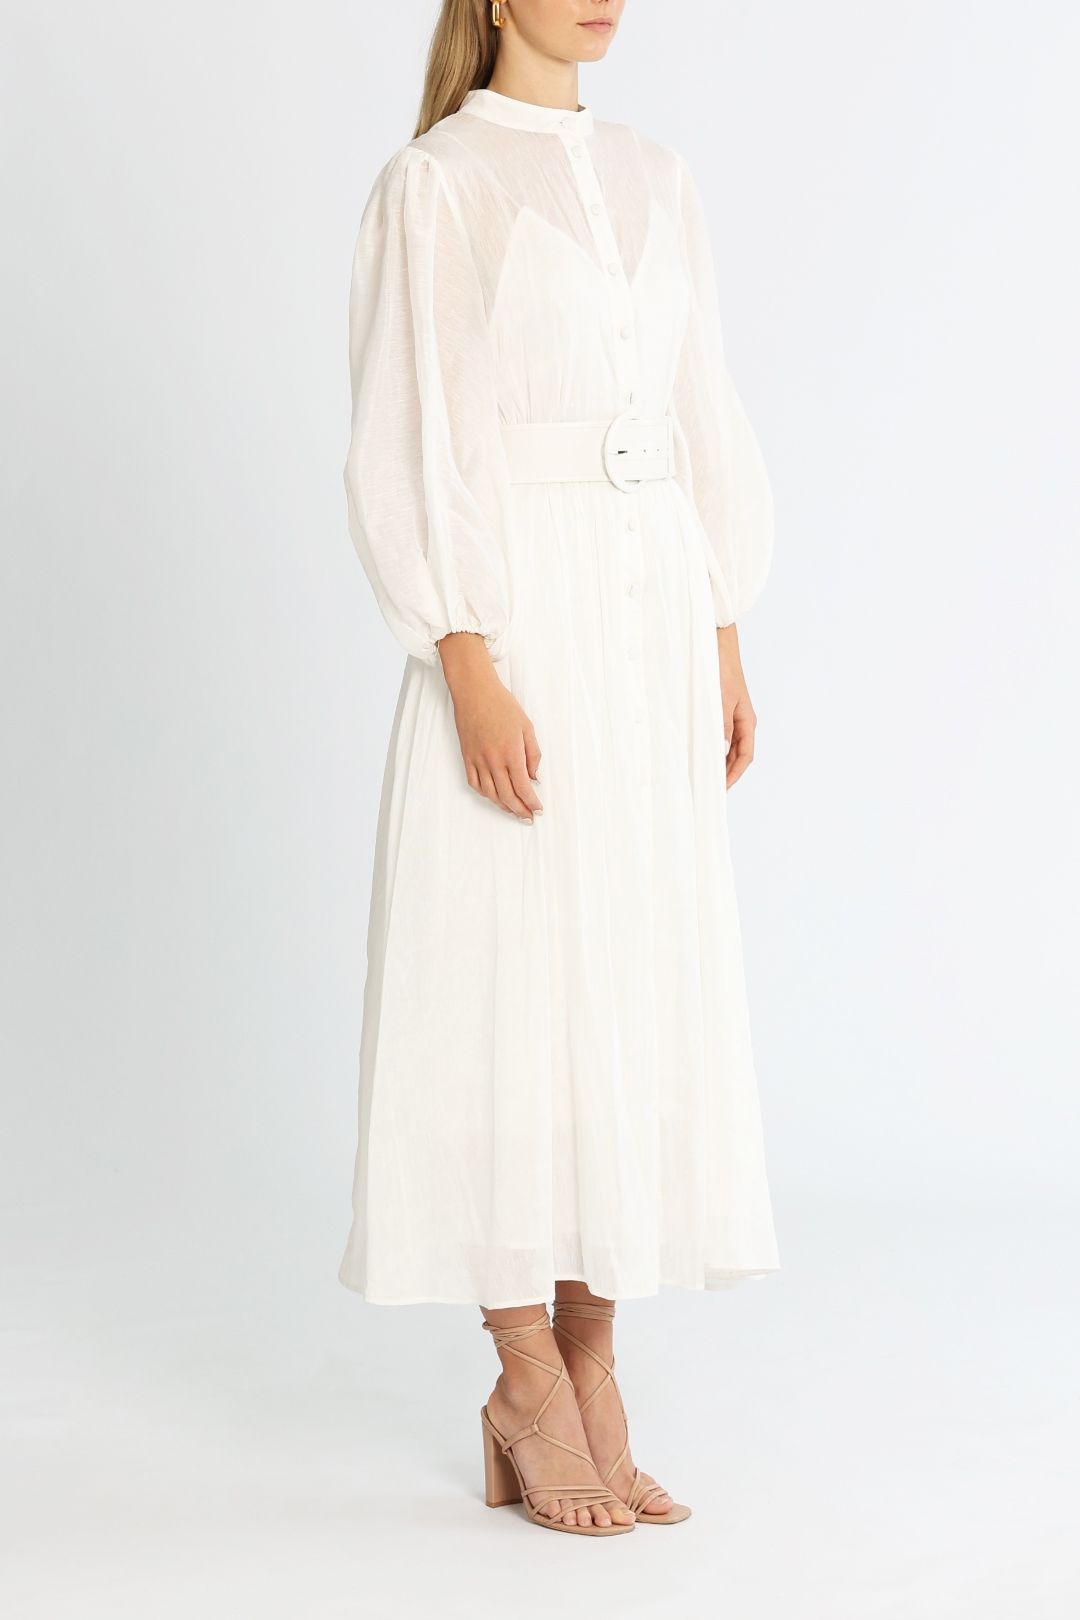 LEO LIN Valentina Silk Linen Midi Dress White Belt